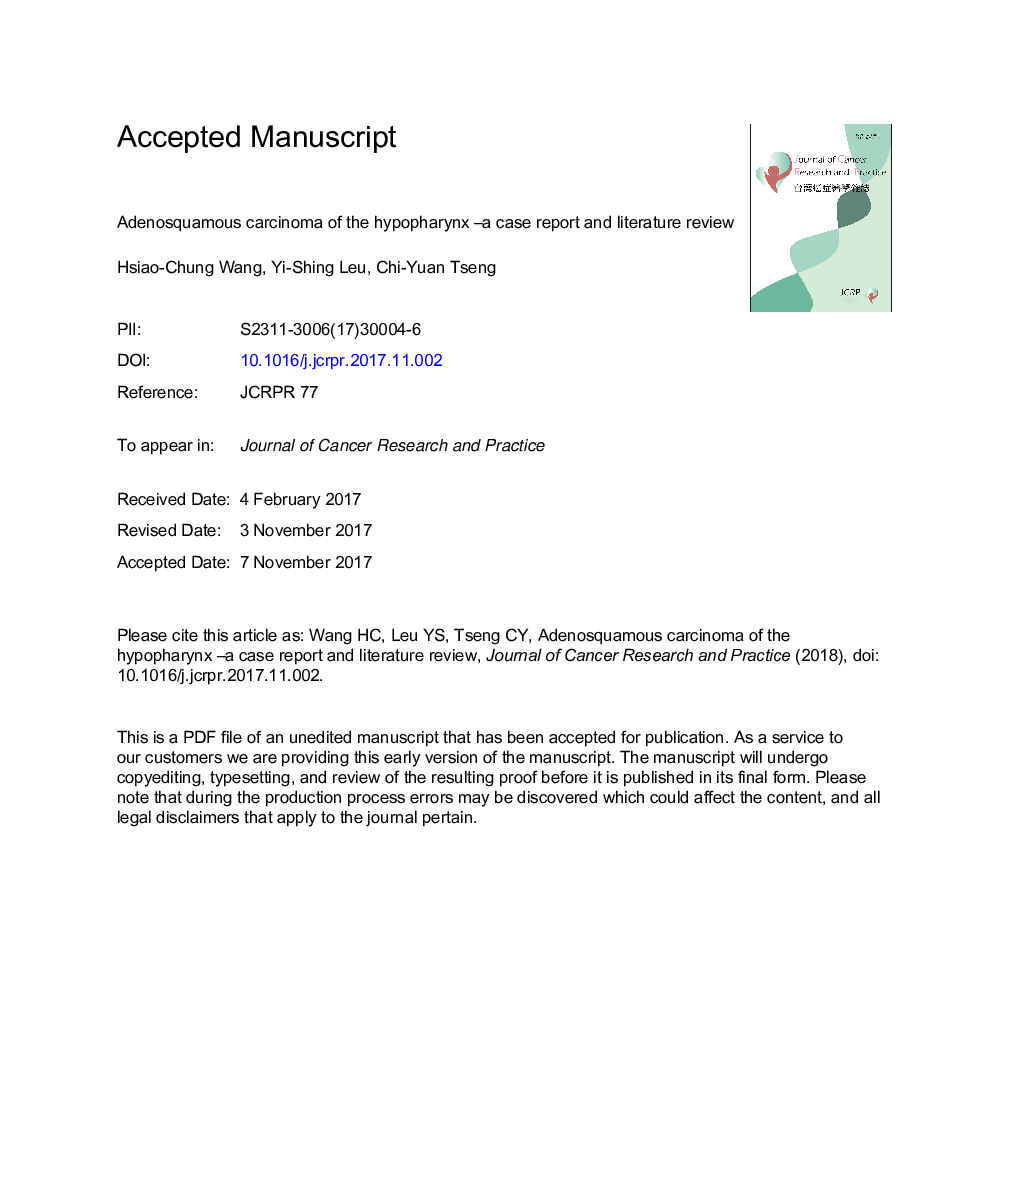 Adenosquamous carcinoma of the hypopharynx